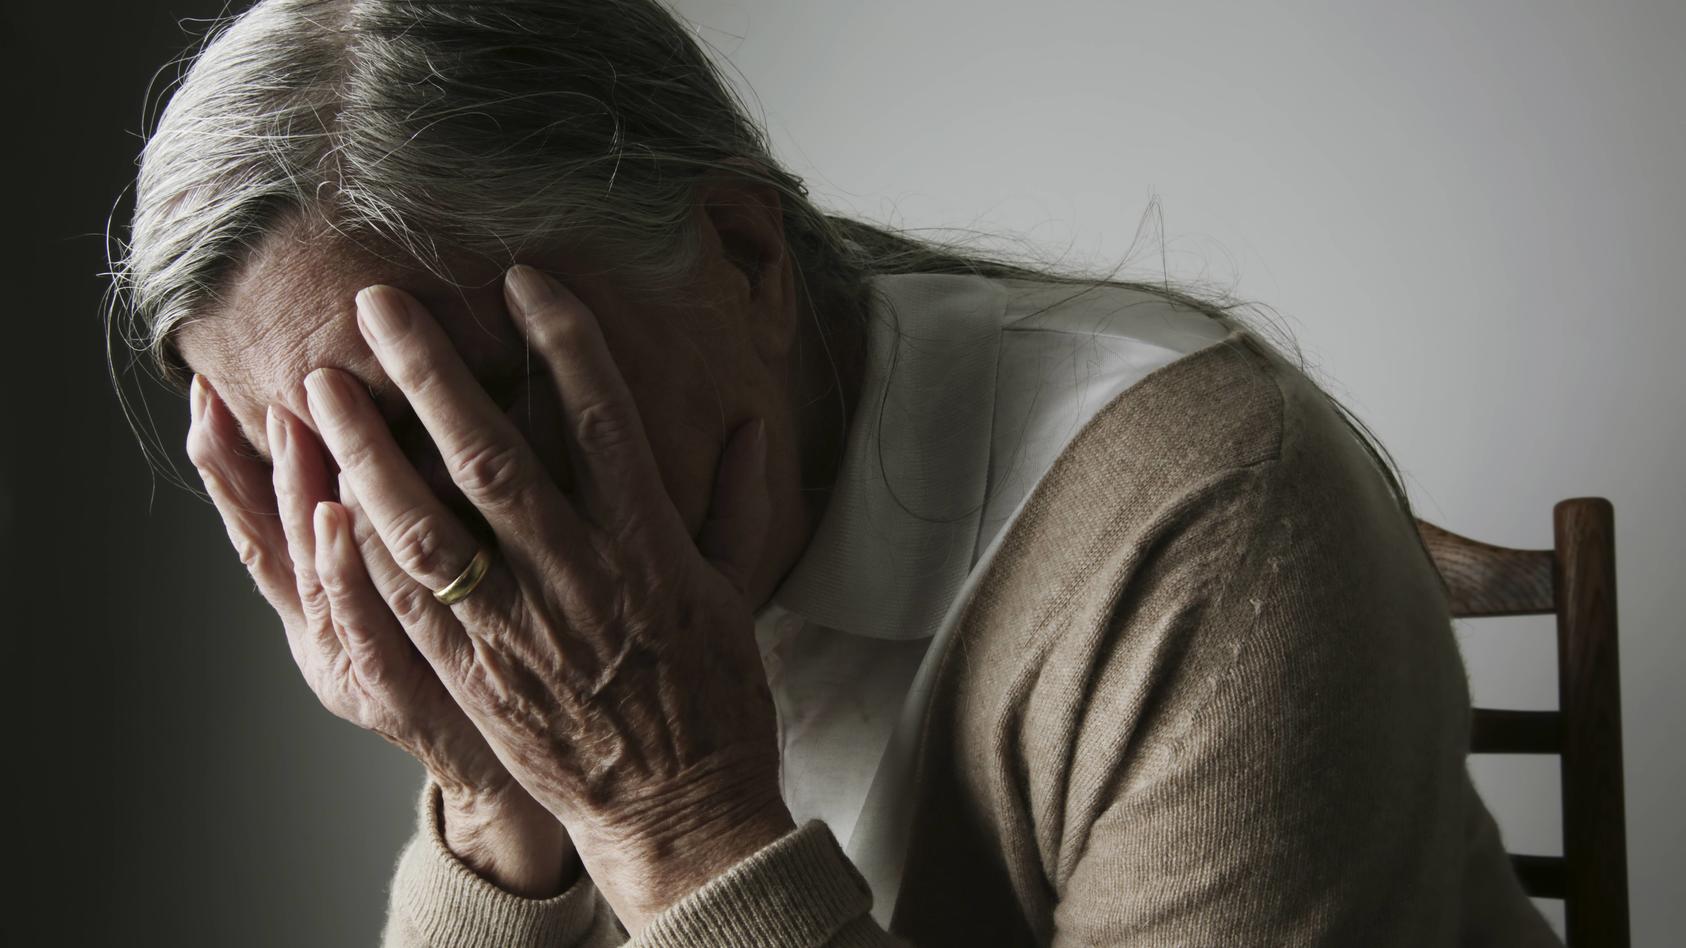 An elderly woman suffering from dementia